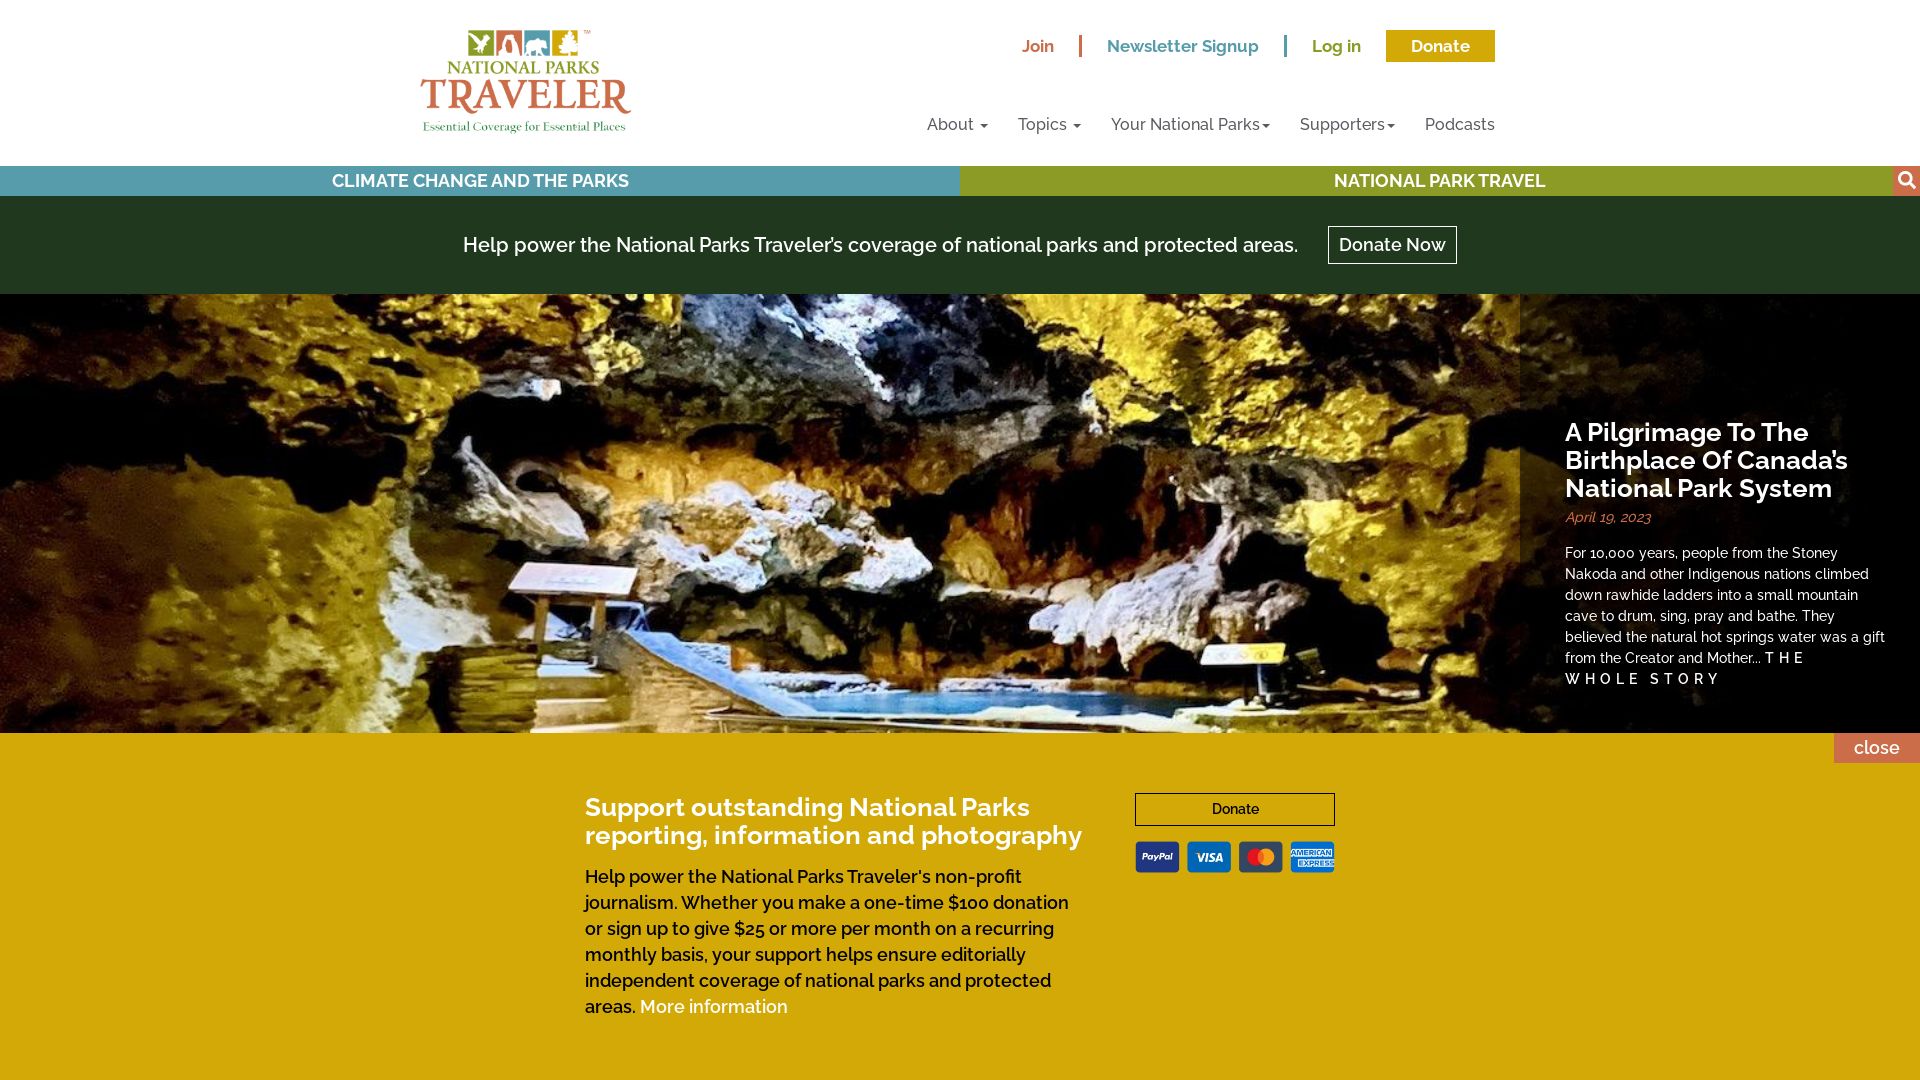 Website status nationalparkstraveler.org is   ONLINE